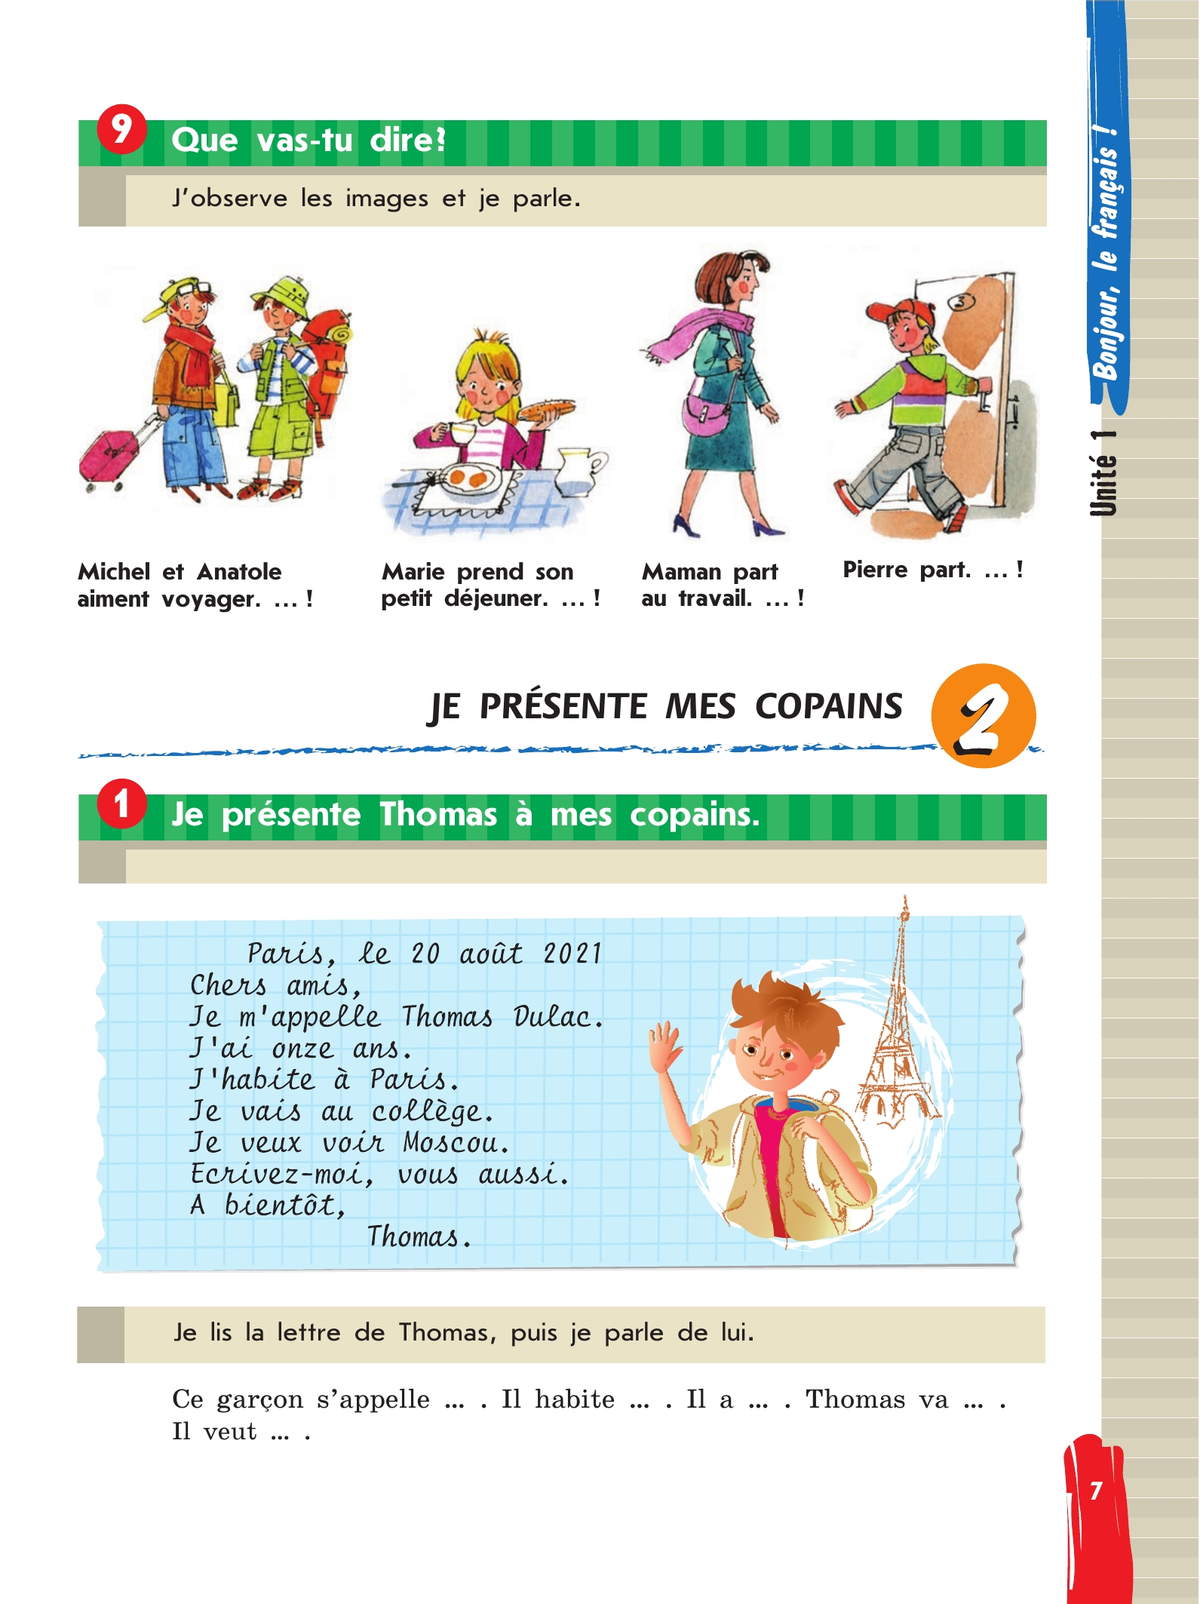 Французский язык. Второй иностранный язык. 5 класс. Учебник. В 2 ч. Часть 1 10